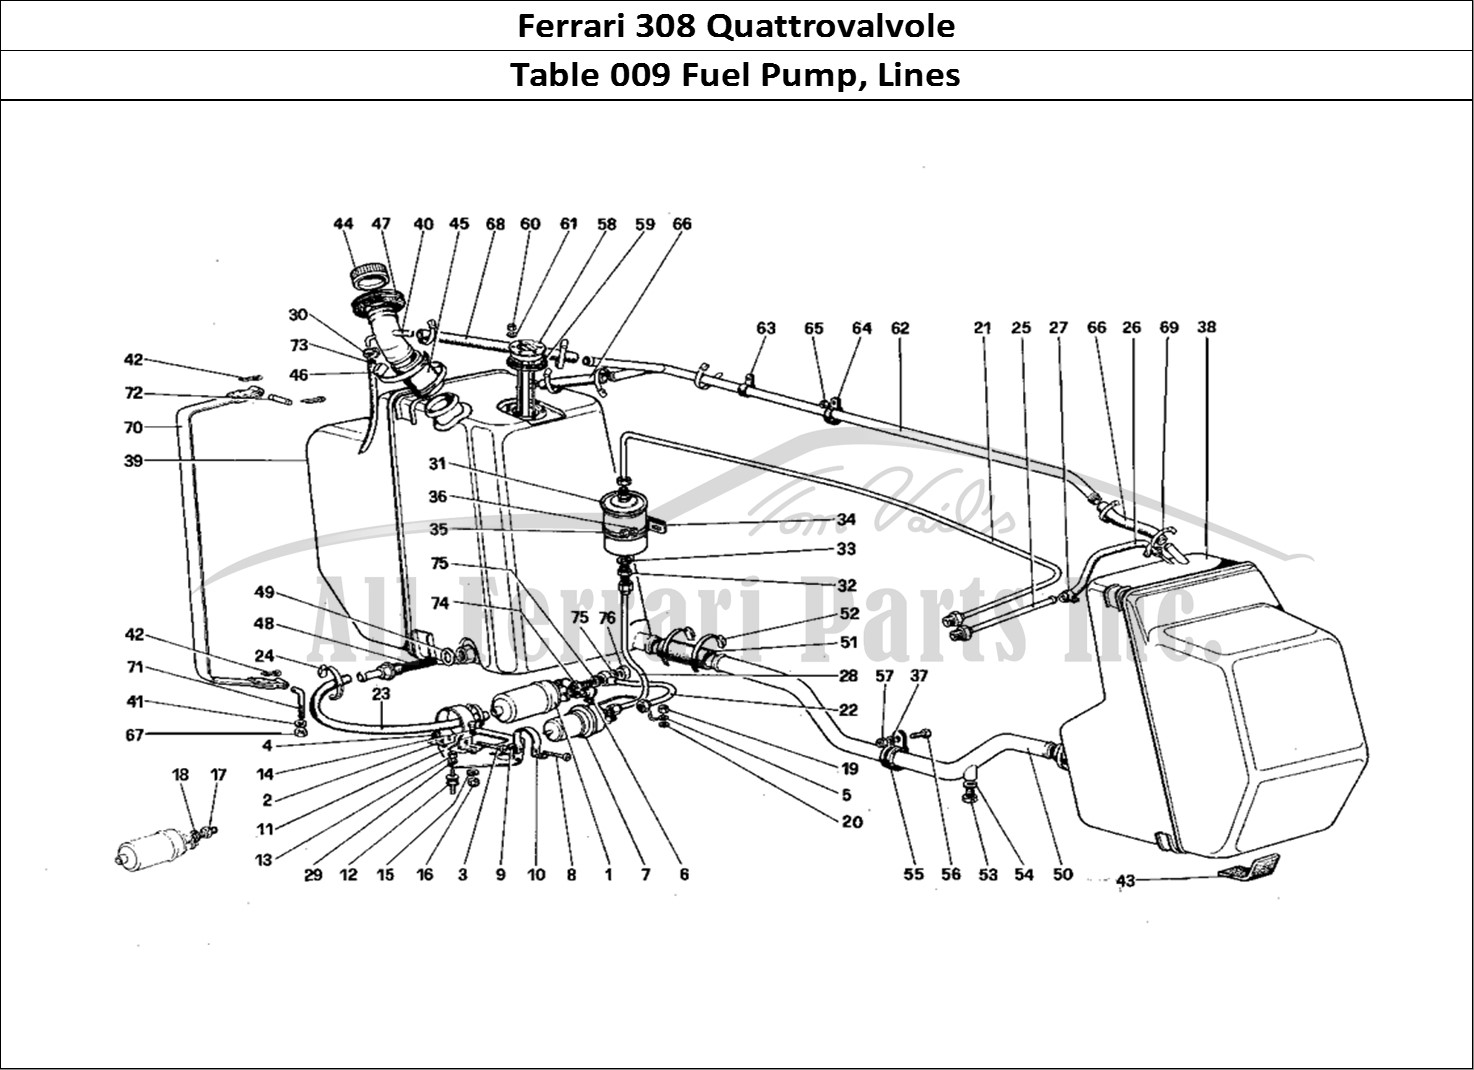 Ferrari Parts Ferrari 308 Quattrovalvole (1985) Page 009 Fuel Pump and Pipes